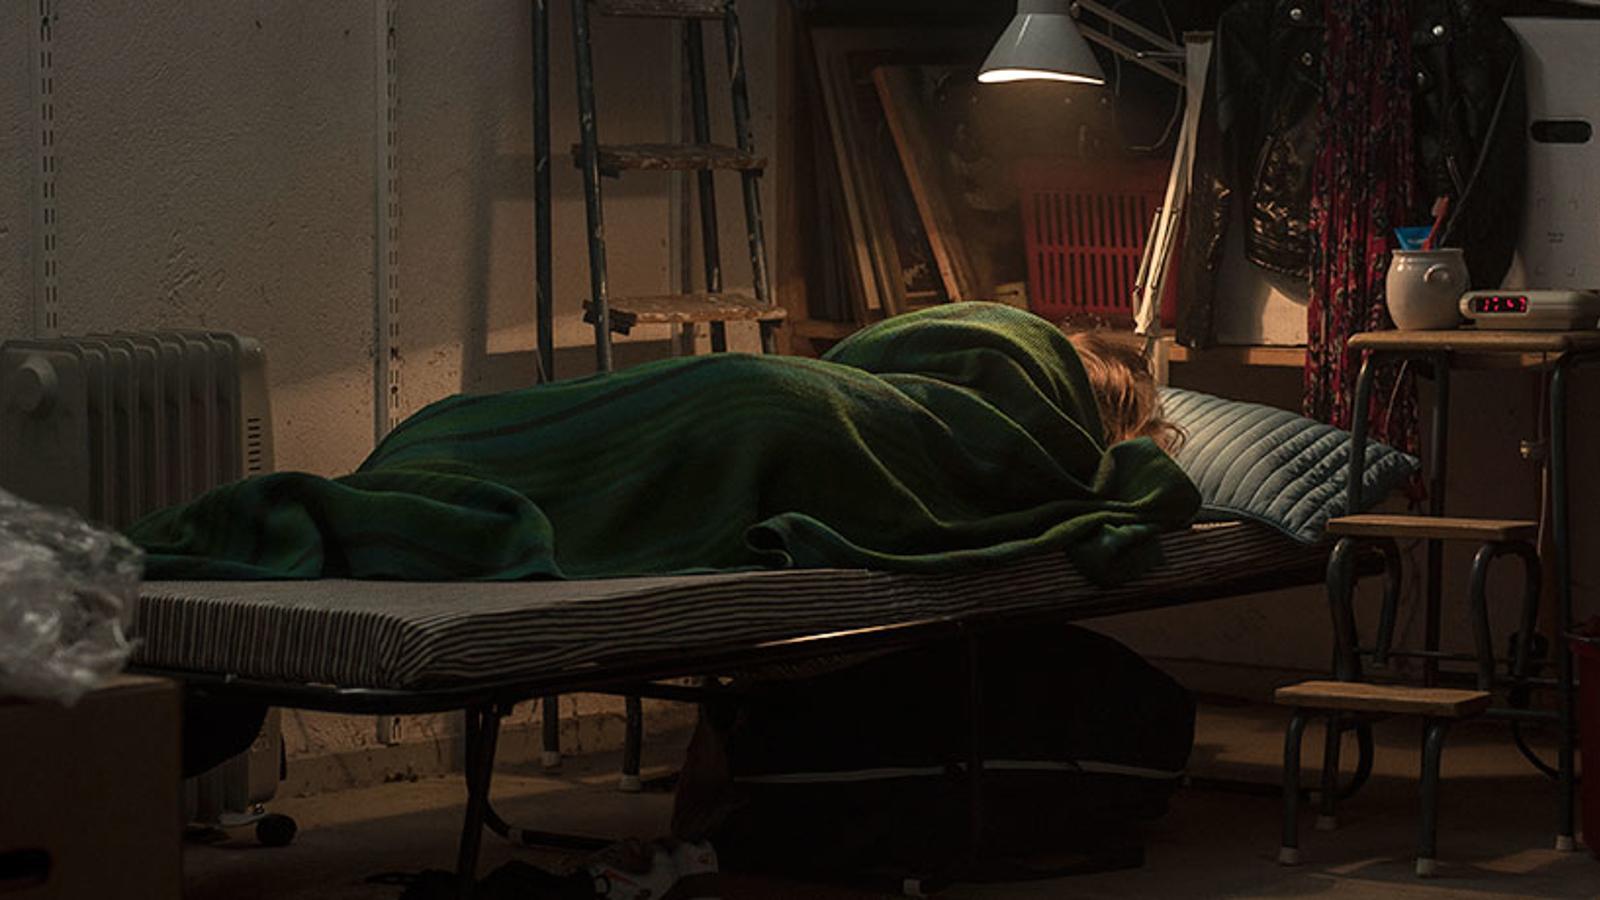 En kvinna som ligger inlindad i en filt på en säng. I rummet lyser en lampa ovanför sängen, och bakgrunden är stökig.